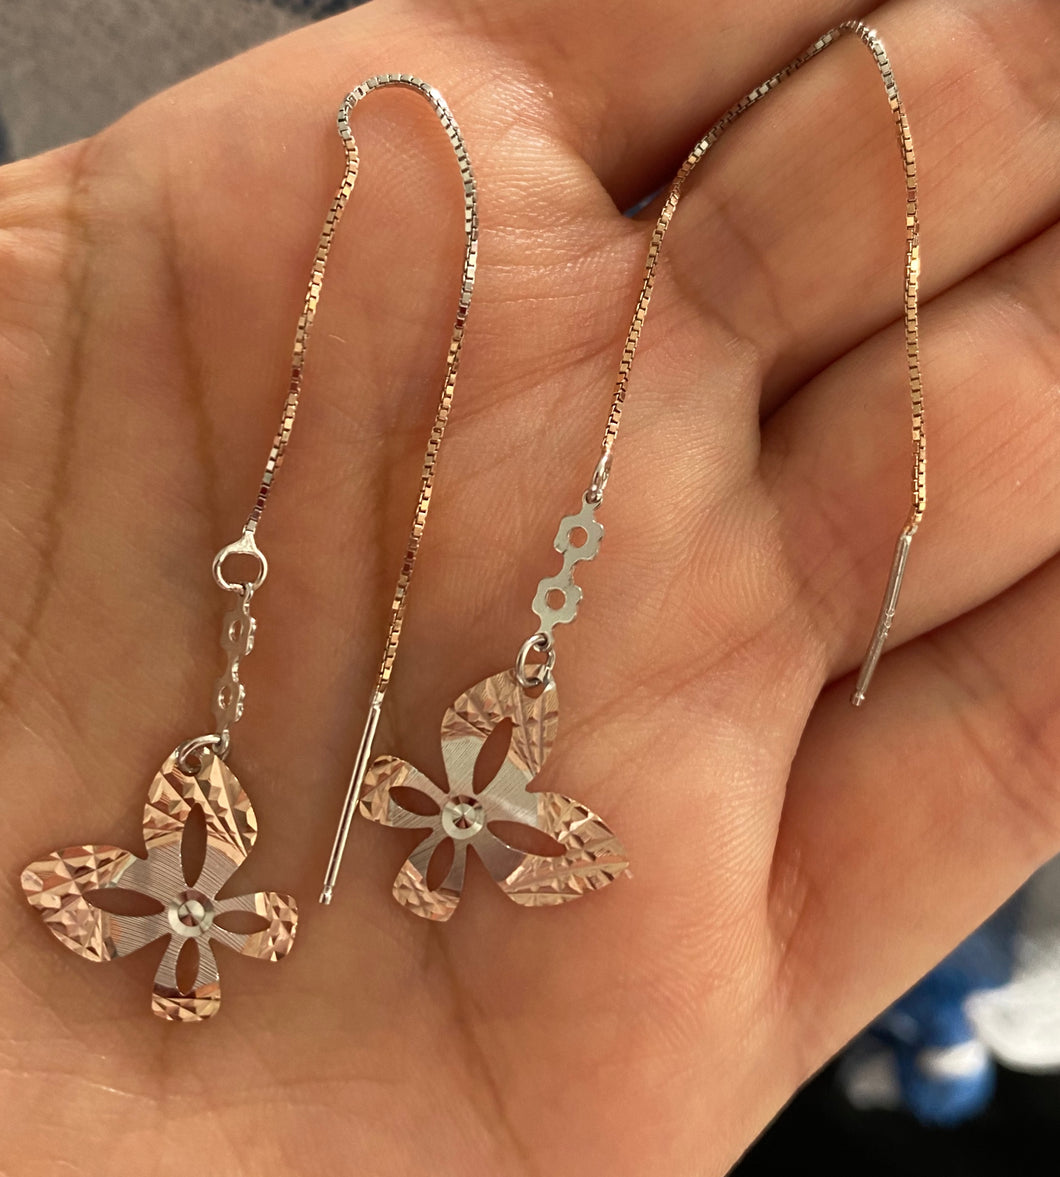 Butterfly earring on chain